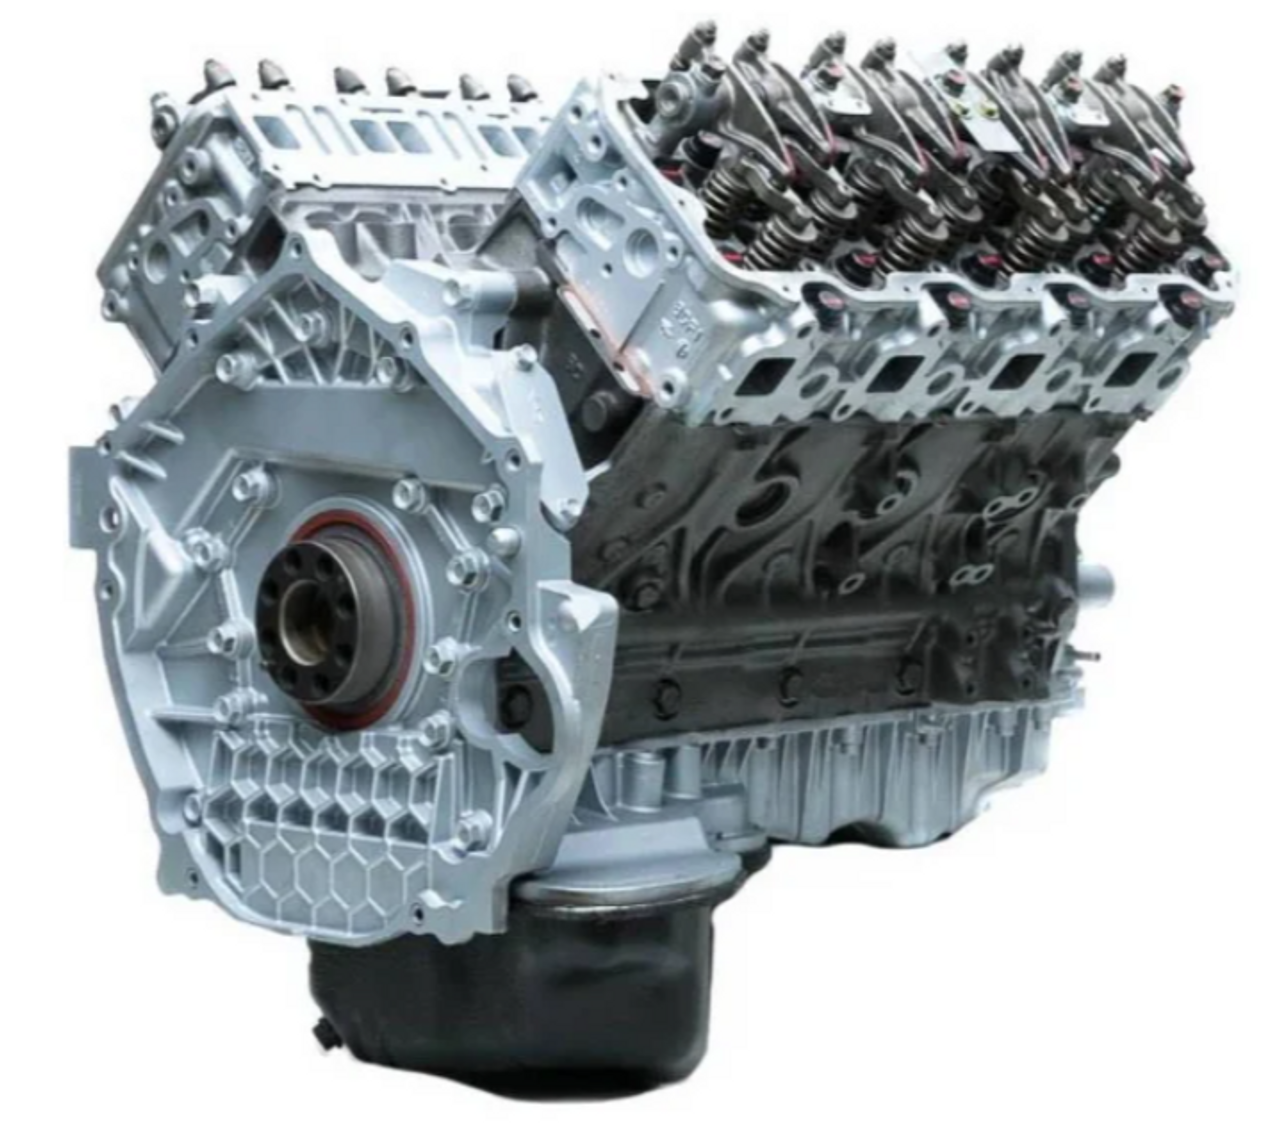 DFC Diesel 6.6 Duramax Engine-Other View